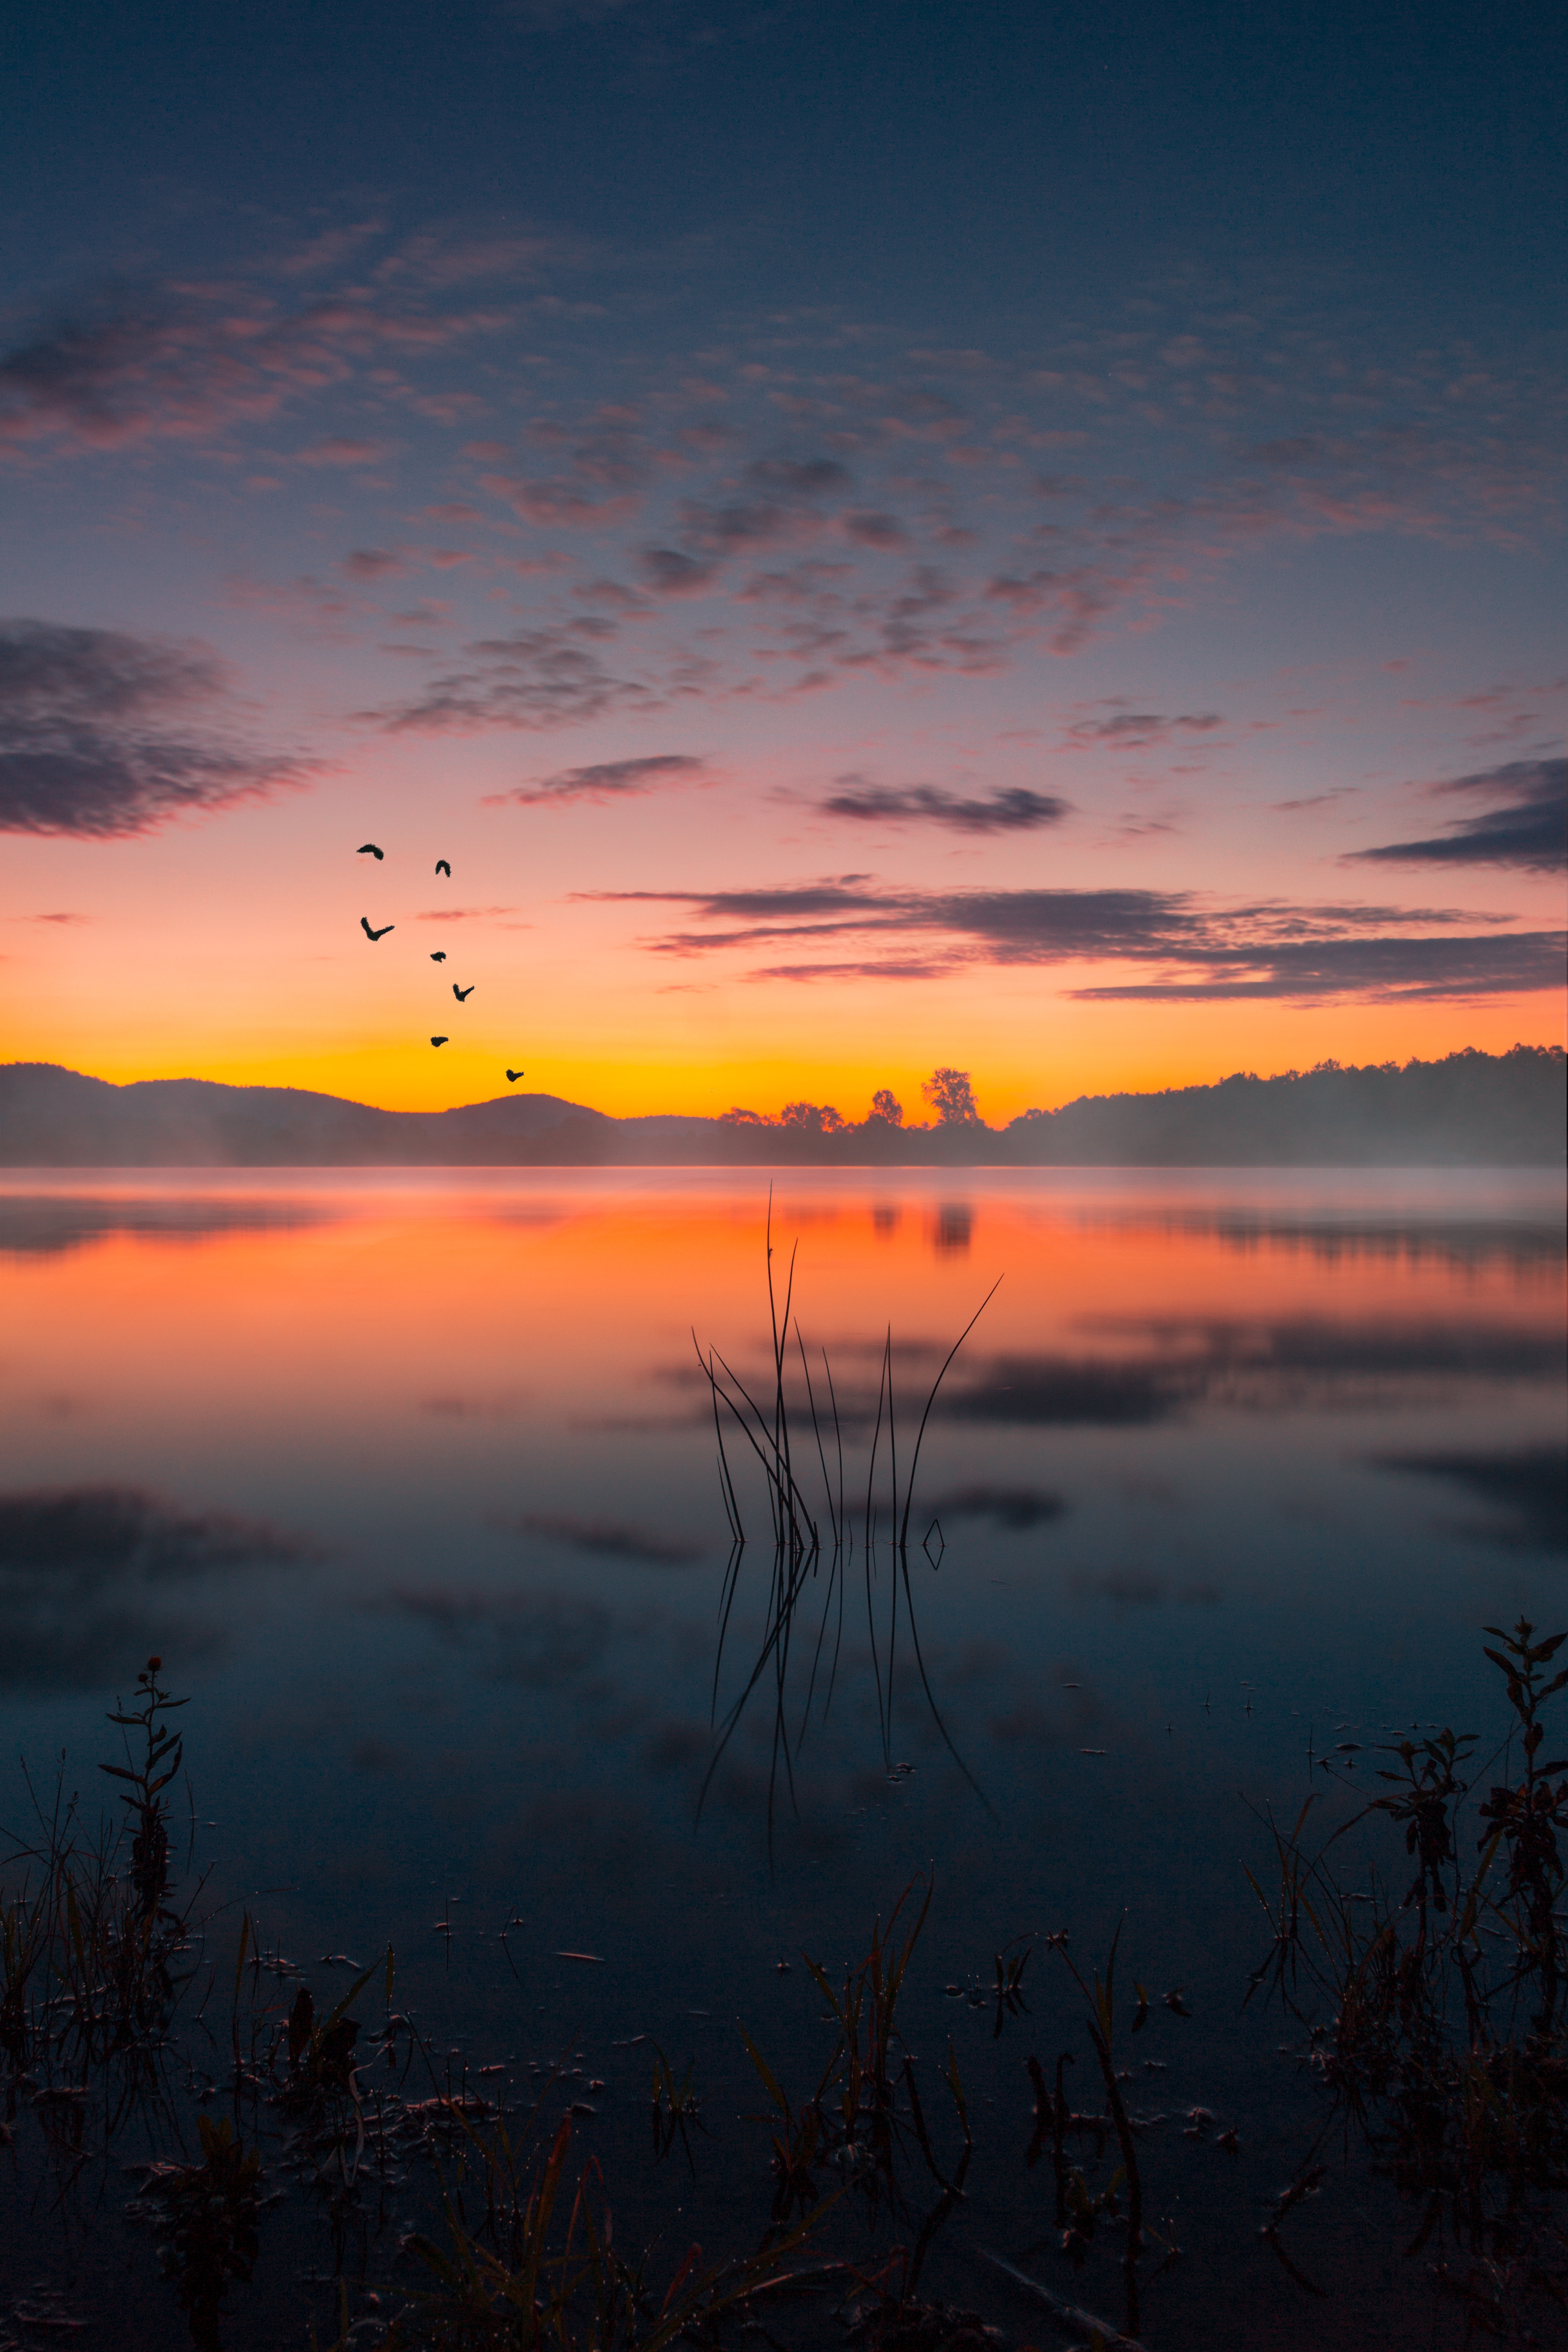 twilight, lake, landscape, nature, sunset, fog, dusk wallpaper for mobile